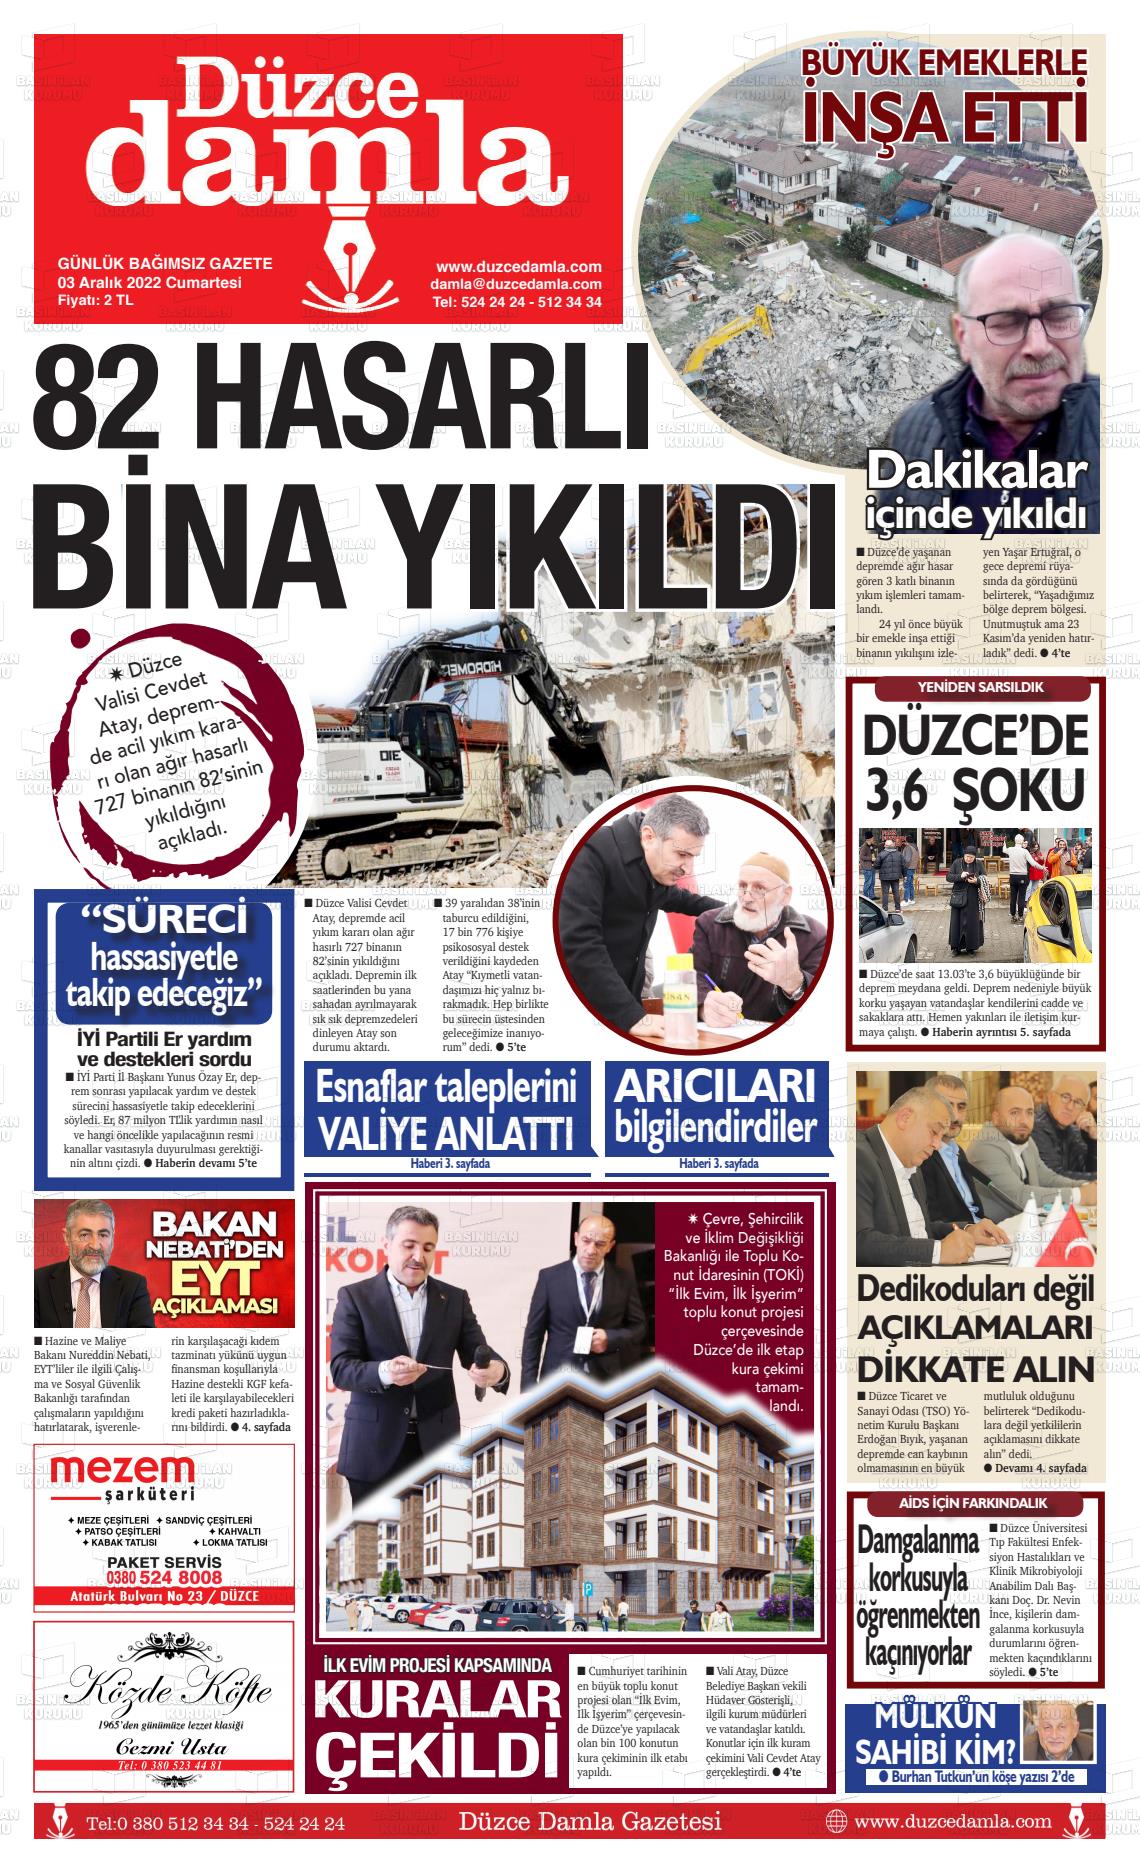 03 Aralık 2022 Düzce Damla Gazete Manşeti